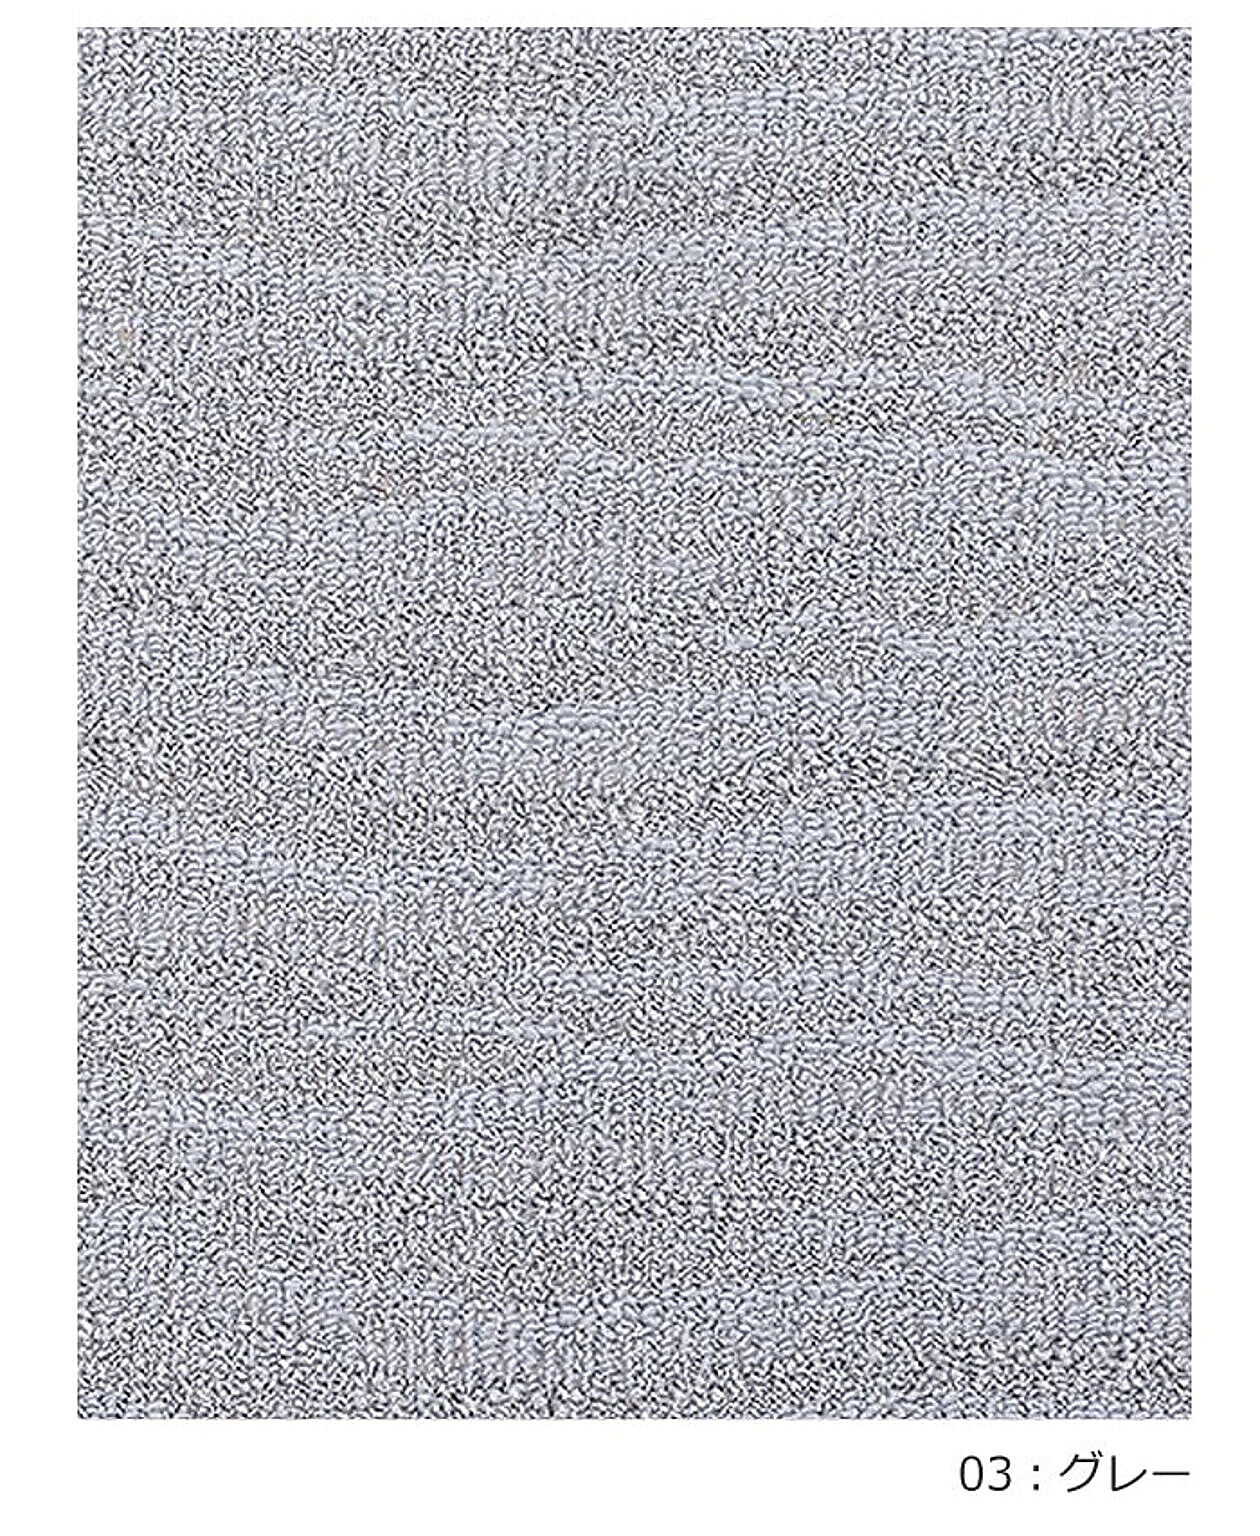 ラグ ラグマット 絨毯 日本製 カーペット 北欧 デザイン 防ダニ 抗菌 prevell プレーベル ポート 本間8畳 約382×382cm 8帖 8畳 八畳 引っ越し 新生活